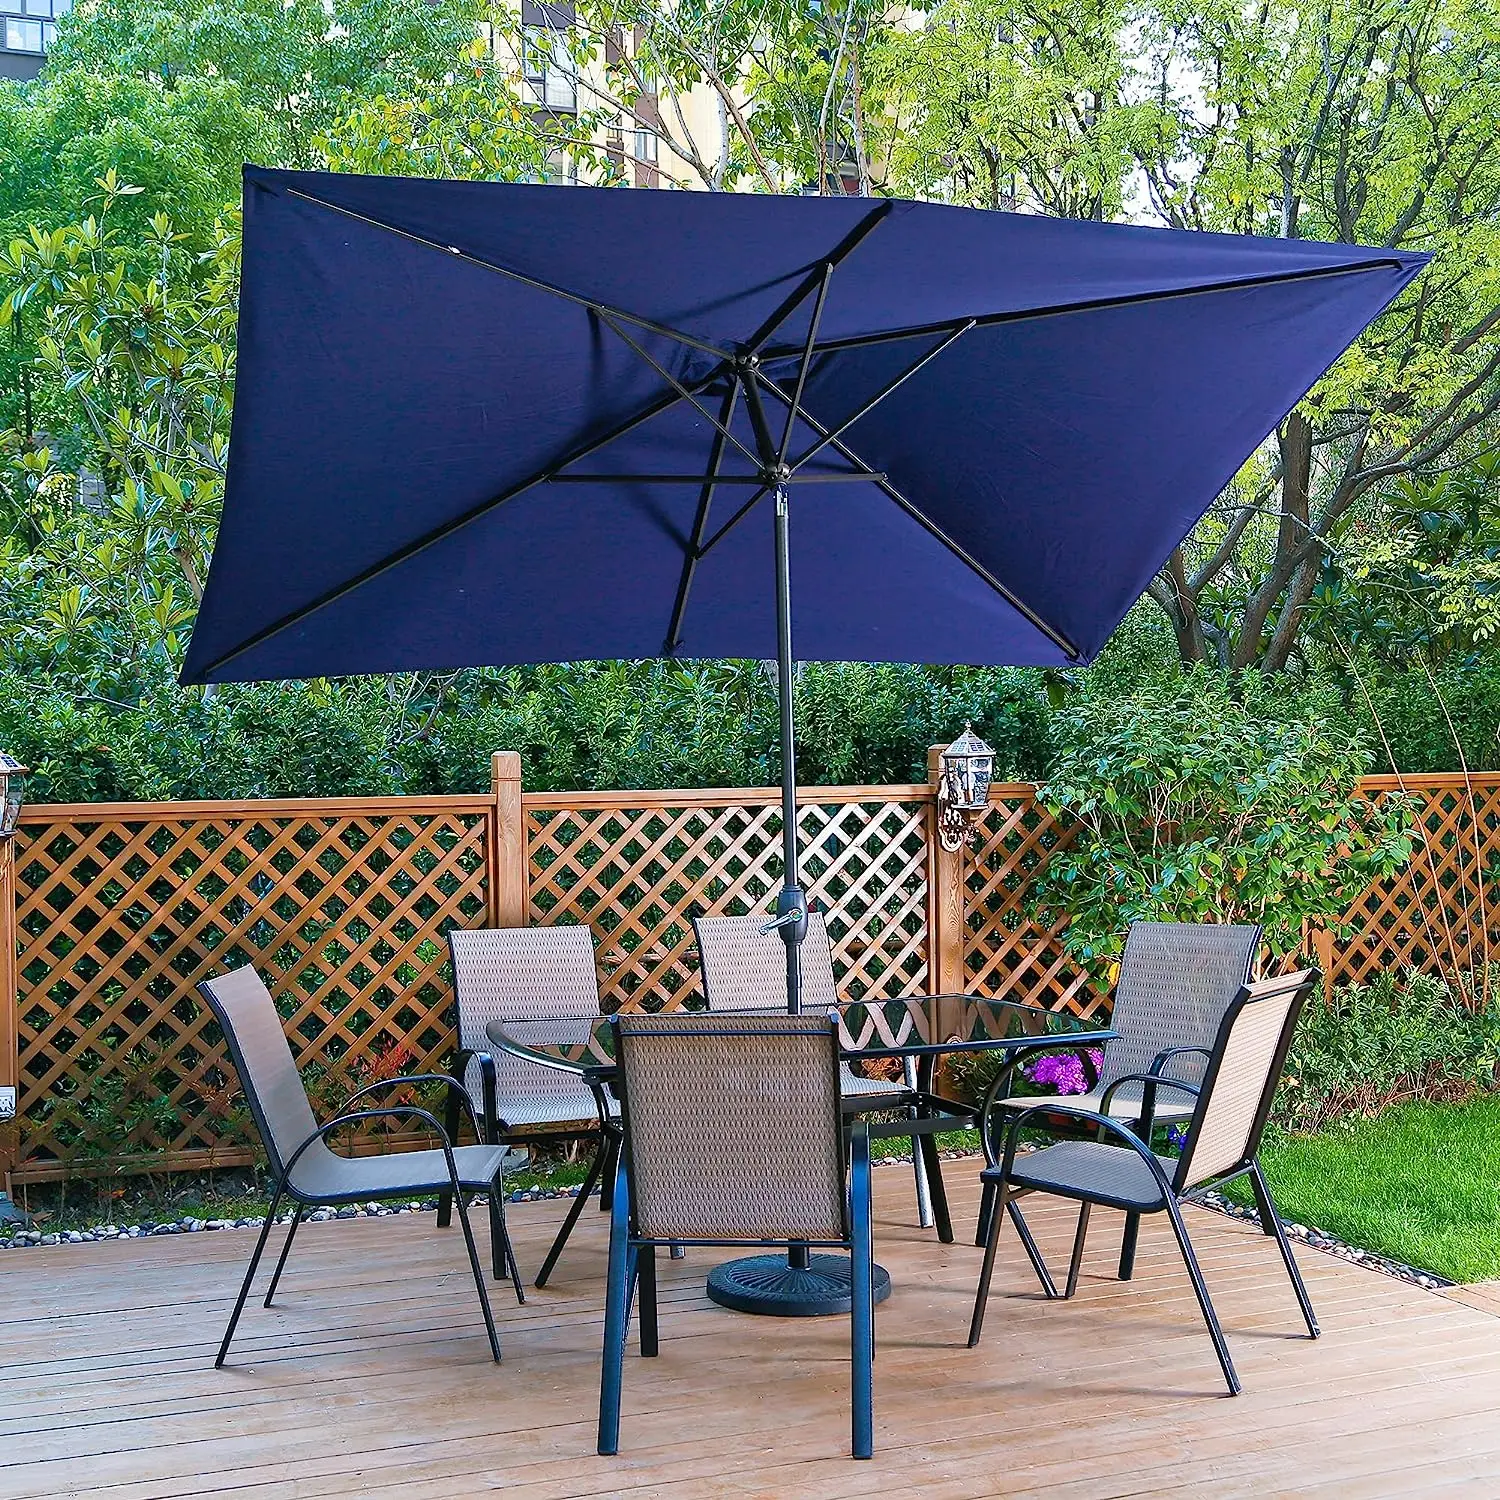 Прямоугольный зонт для патио размером 6,5х10 футов, уличный рыночный столб, зонт с алюминиевым шестом с наклоном и рукояткой, 6 прочных ребер жесткости